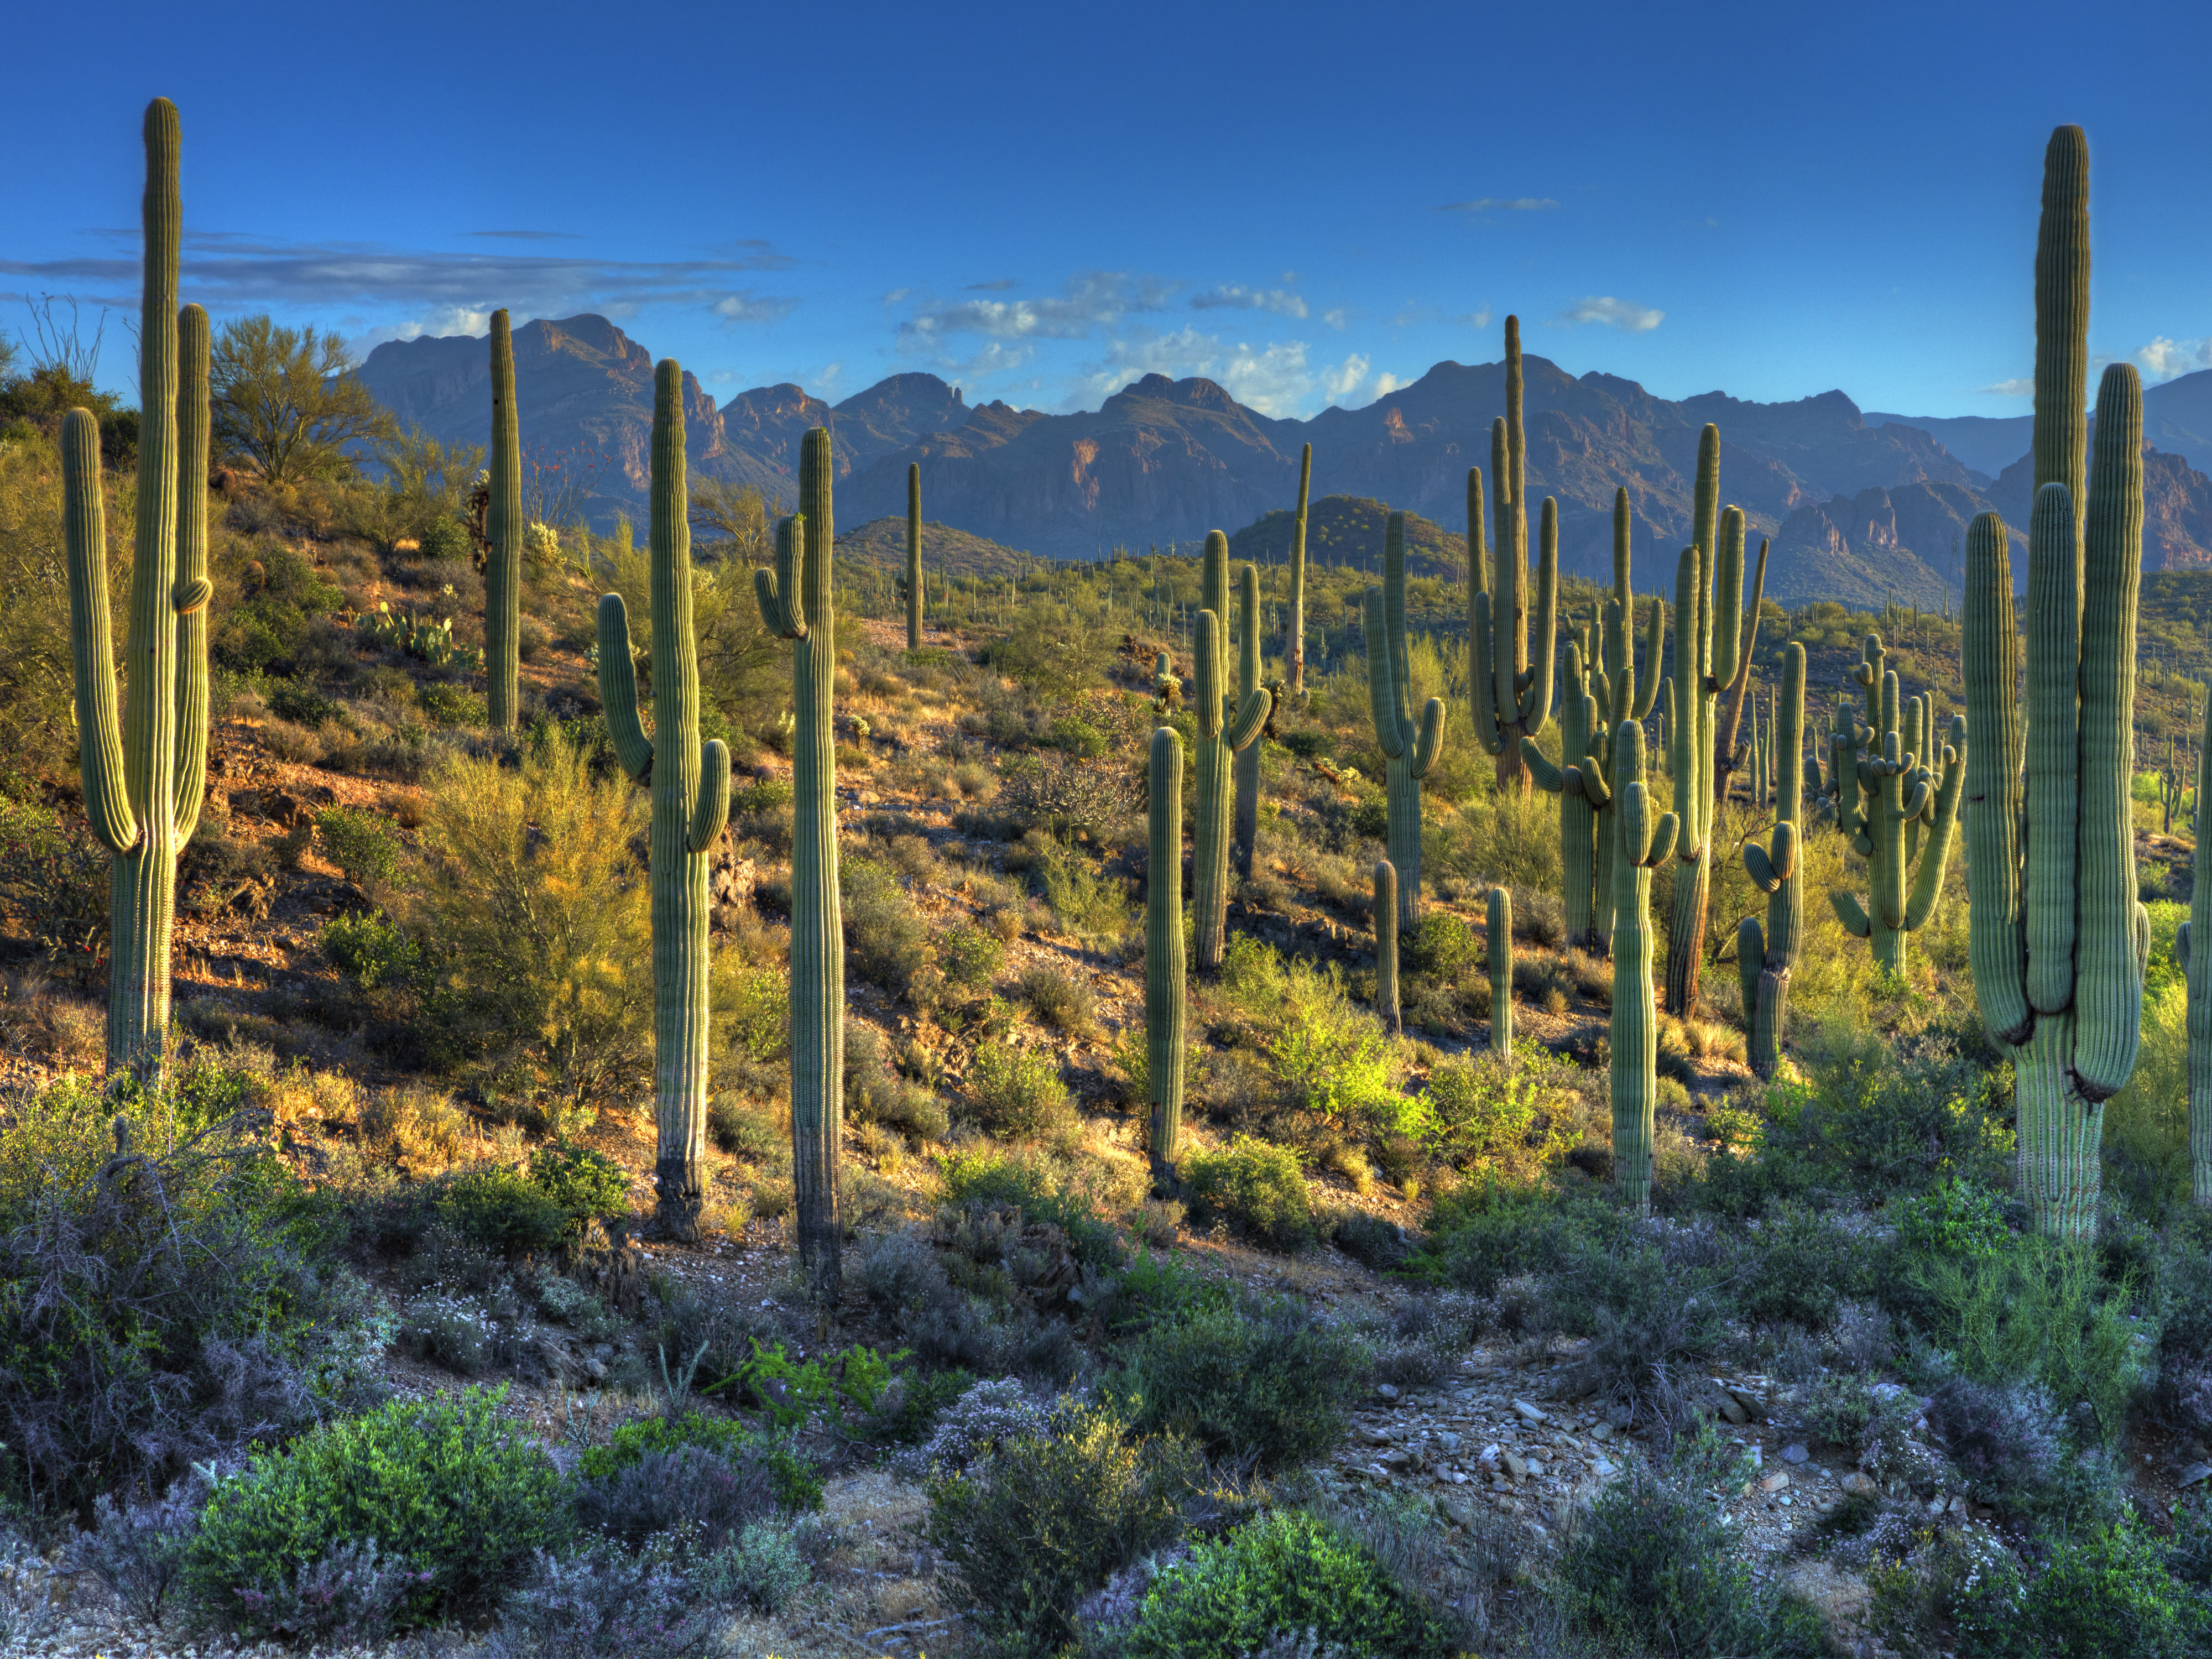 saguaro cacti in the desert